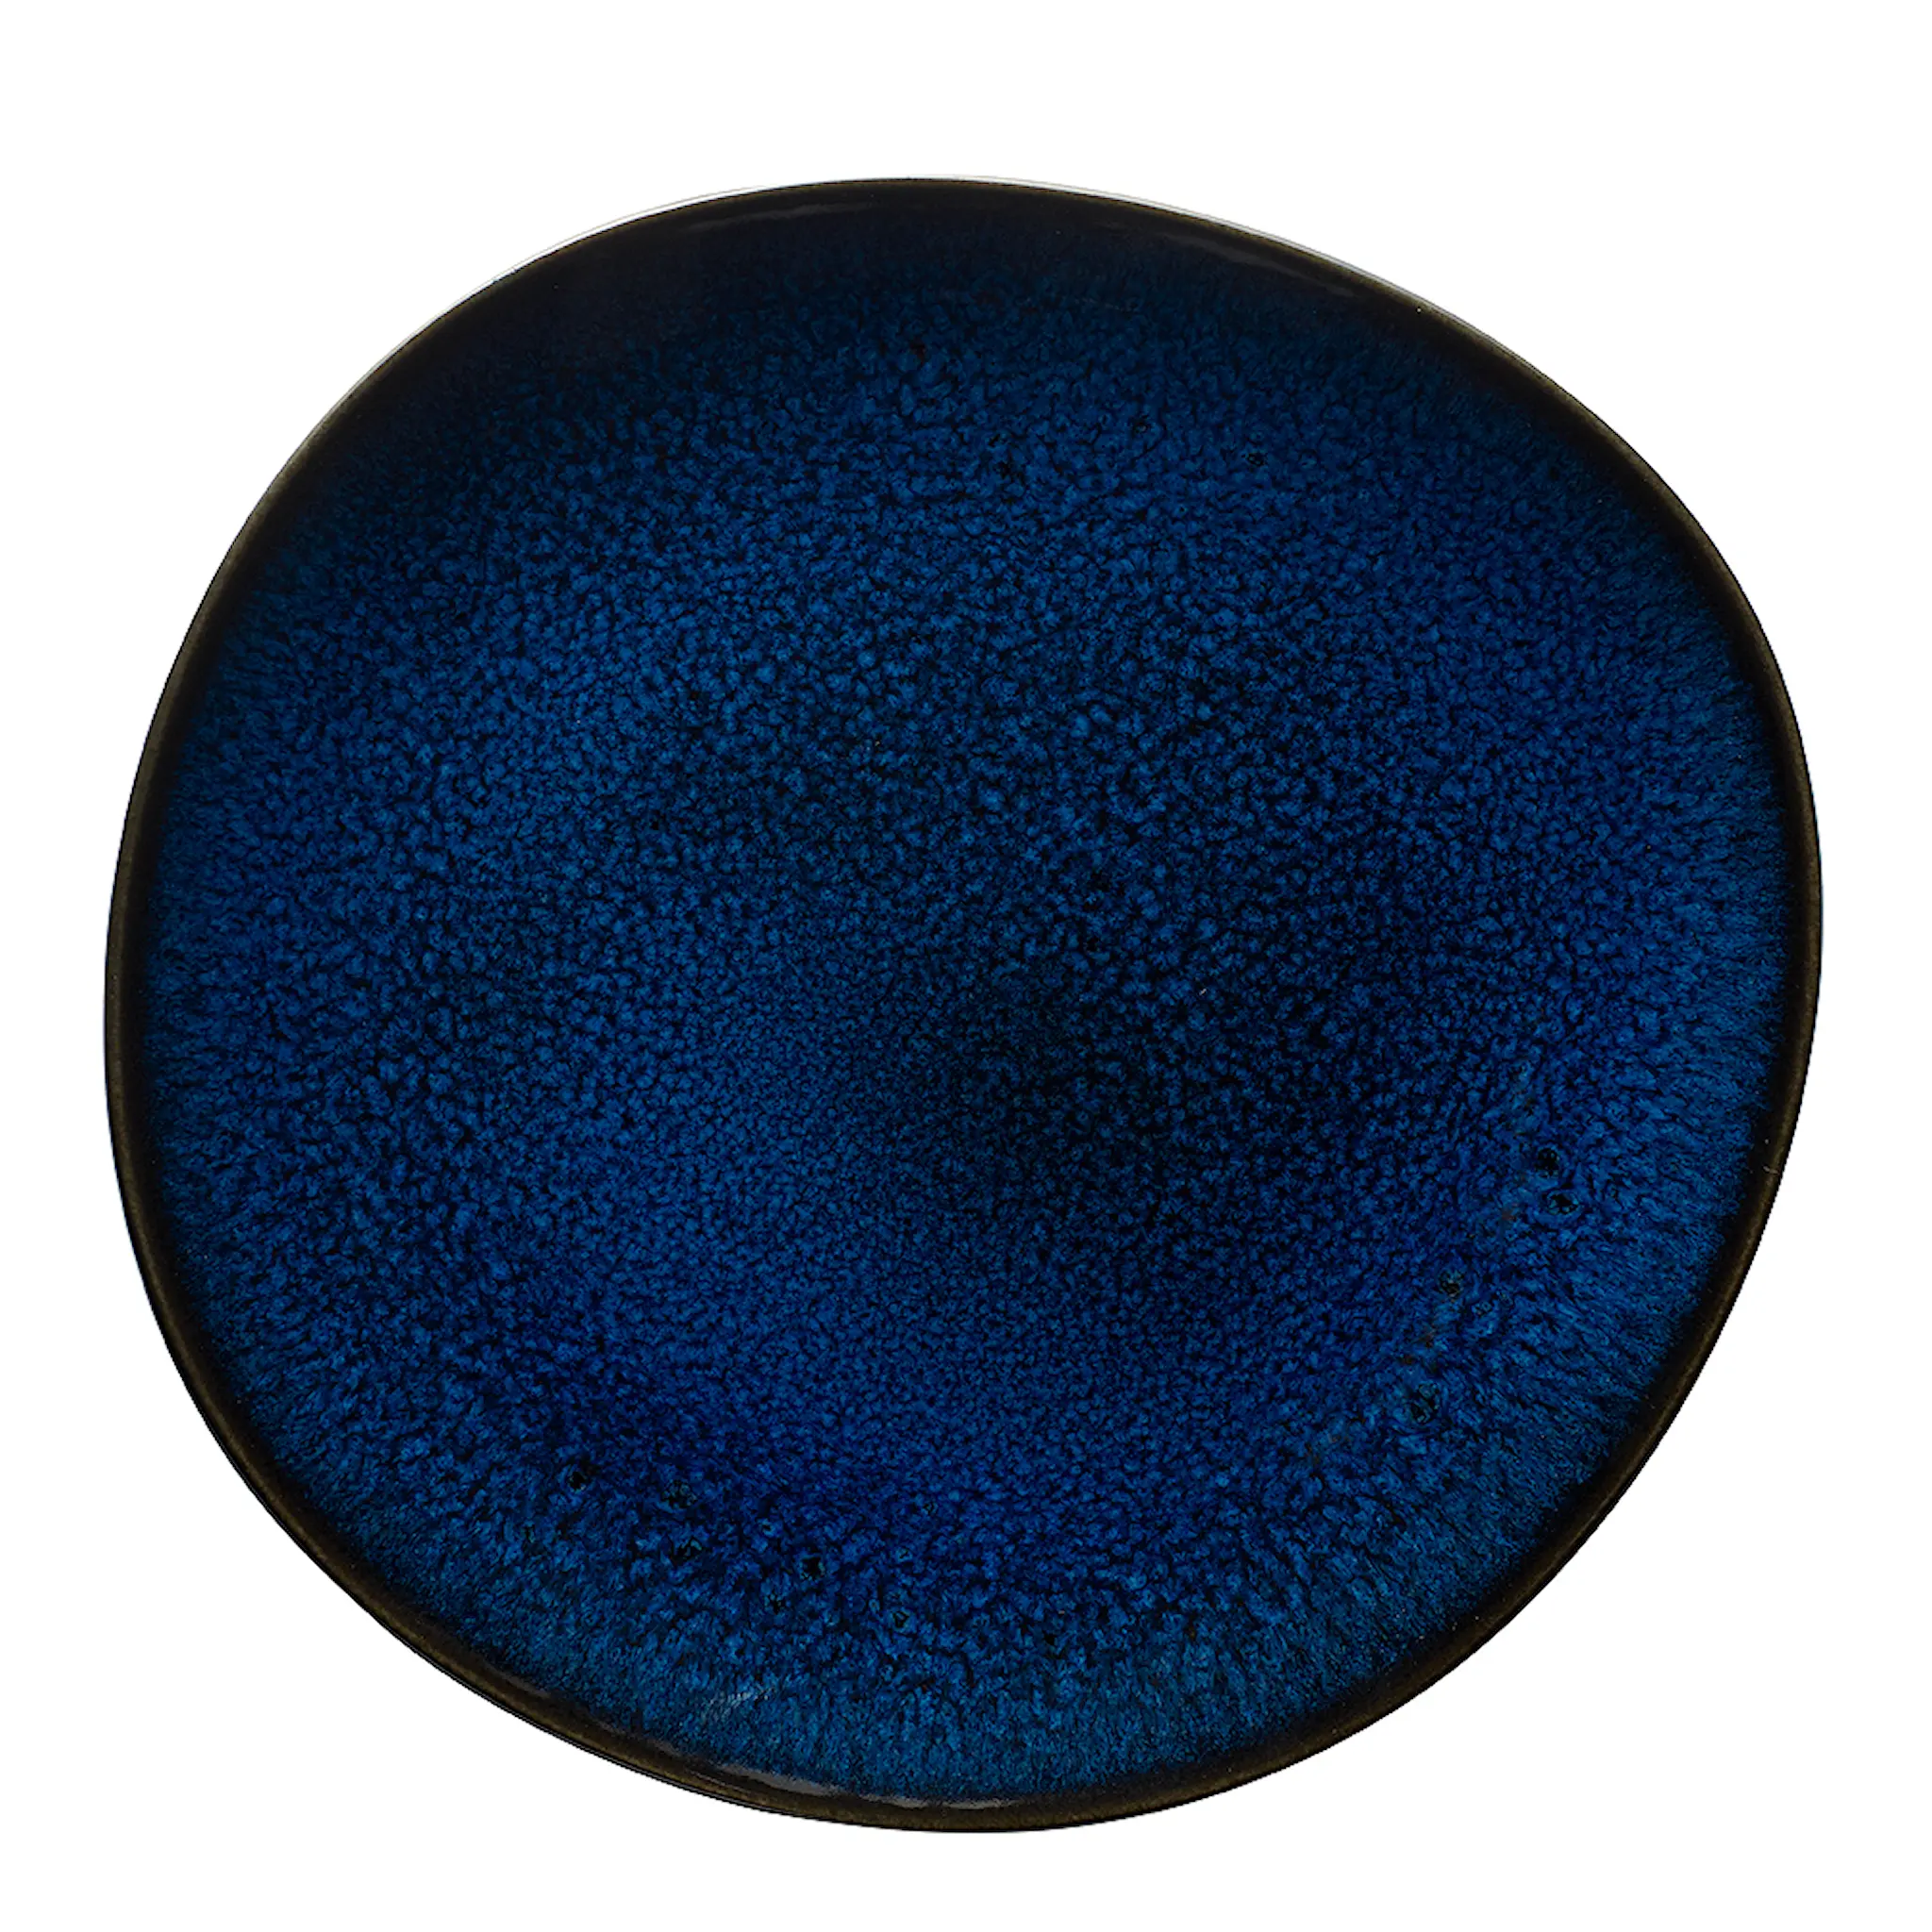 Villeroy & Boch Lave Bleu tallerken 23 cm